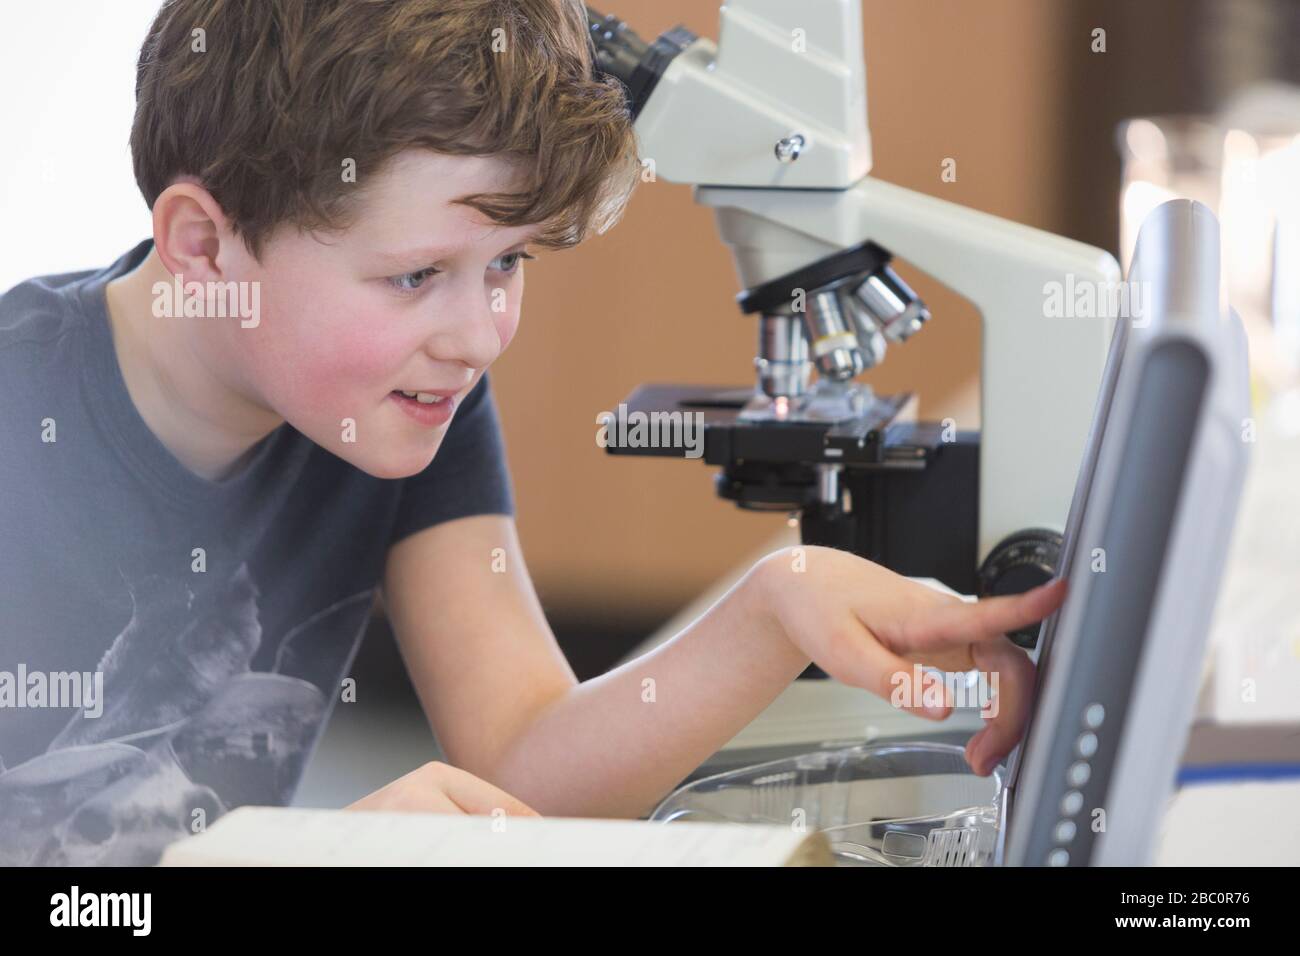 Junge Student führt wissenschaftliche Experimente am Mikroskop und am Computer im Laborunterricht durch Stockfoto